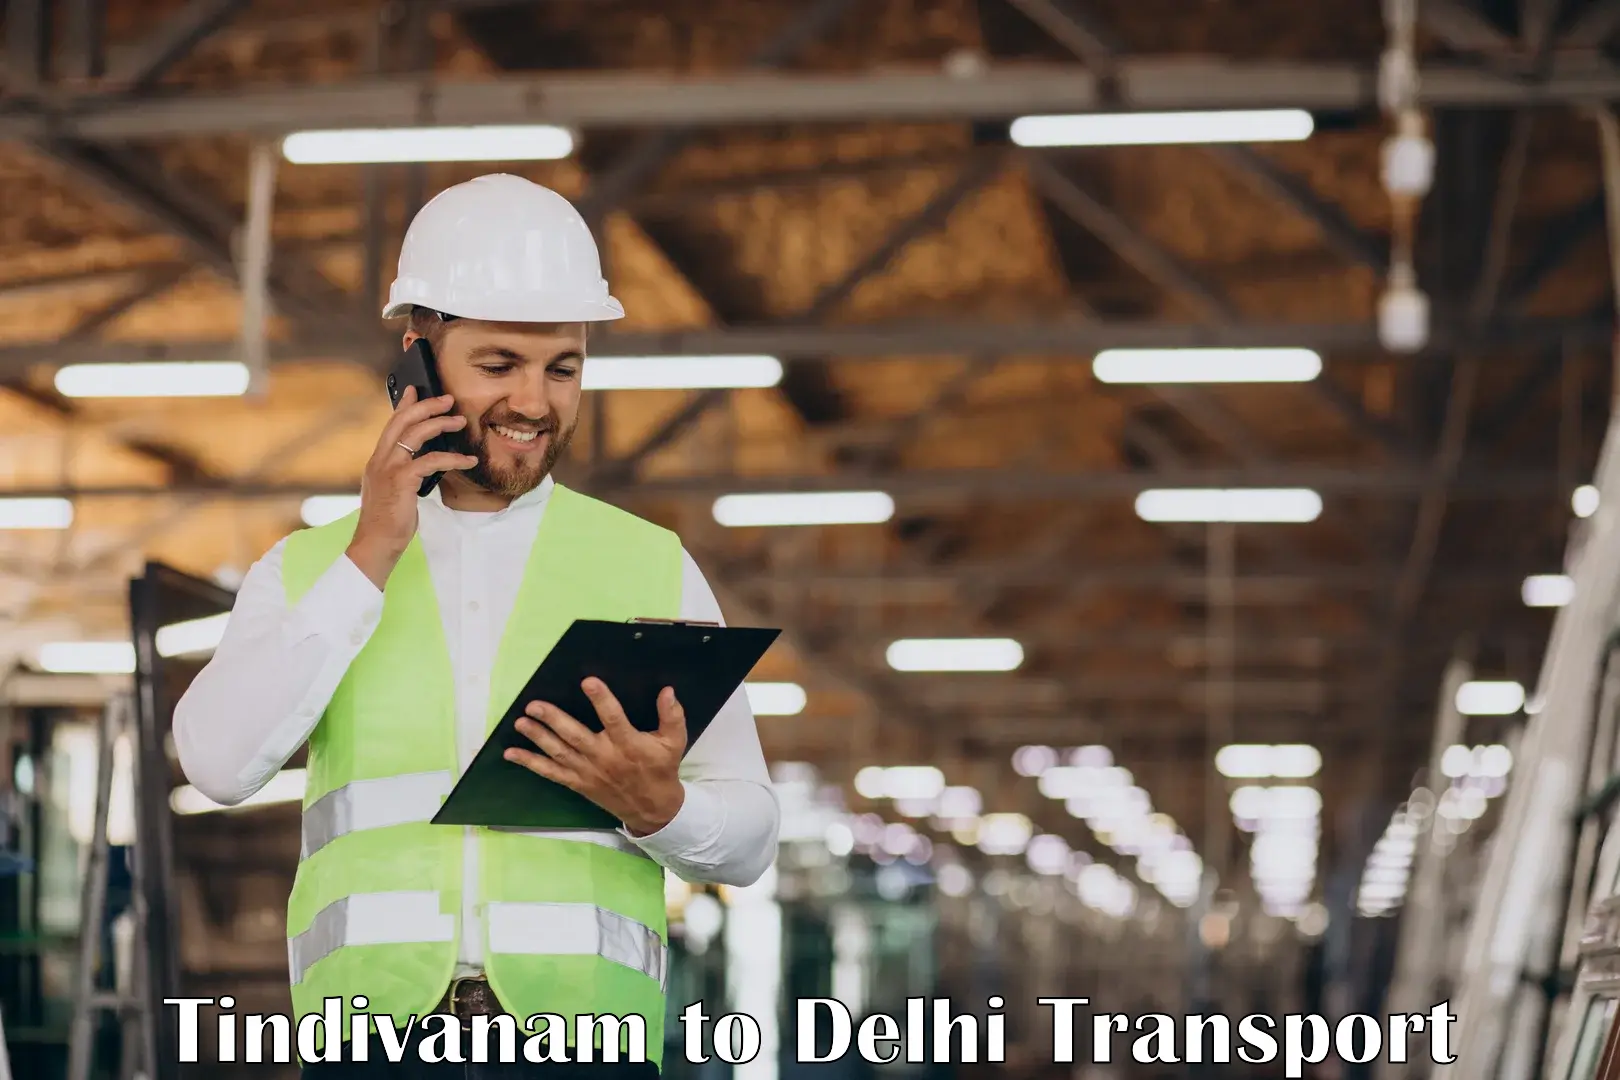 Bike shipping service Tindivanam to IIT Delhi